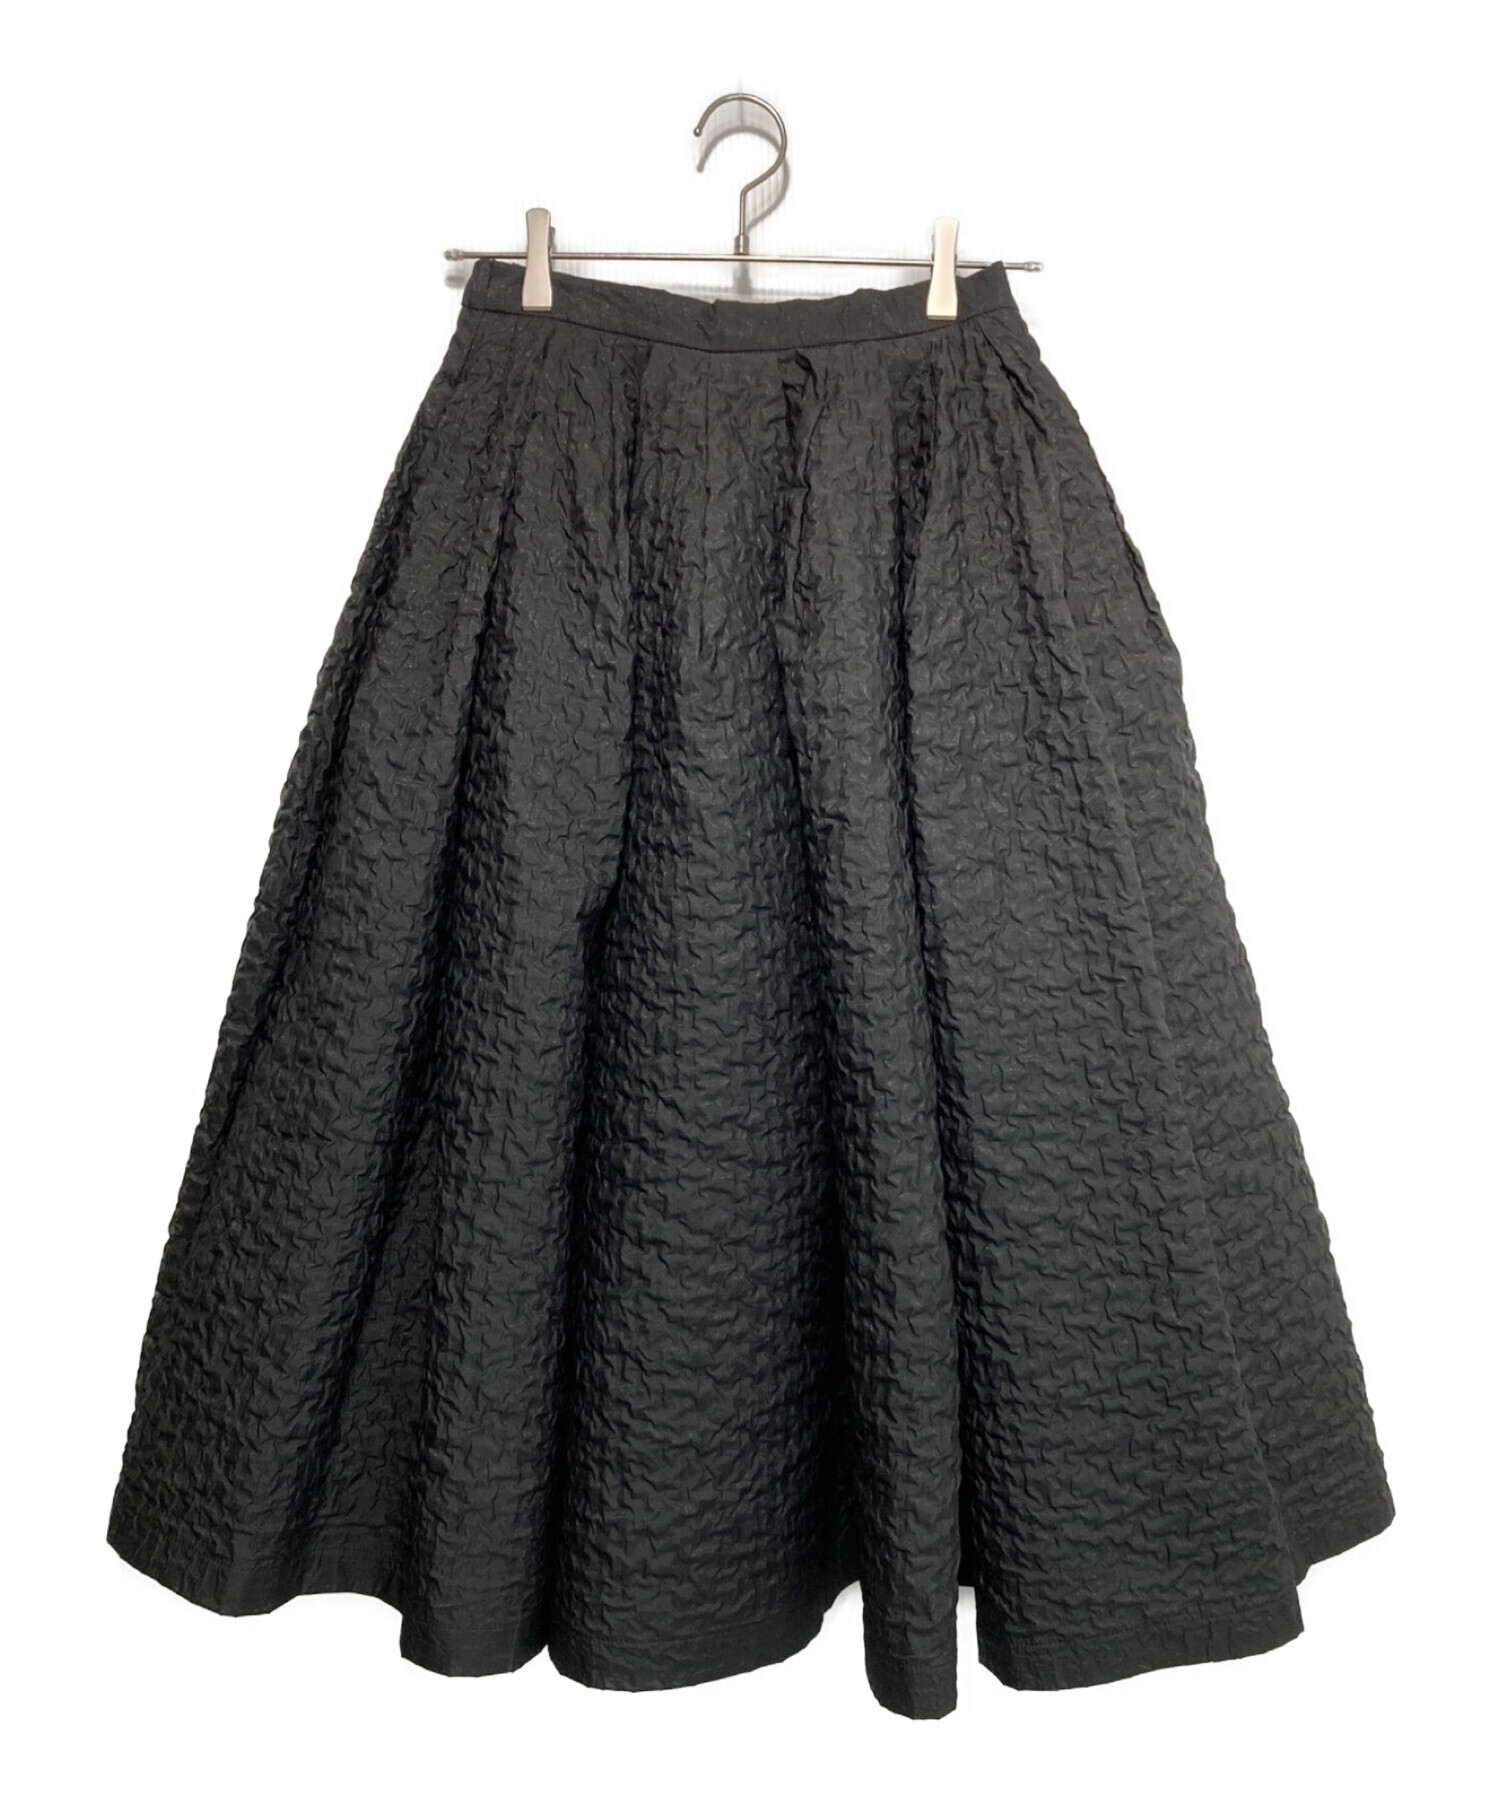 HYEON (ヘヨン) swan skirt ブラック サイズ:M